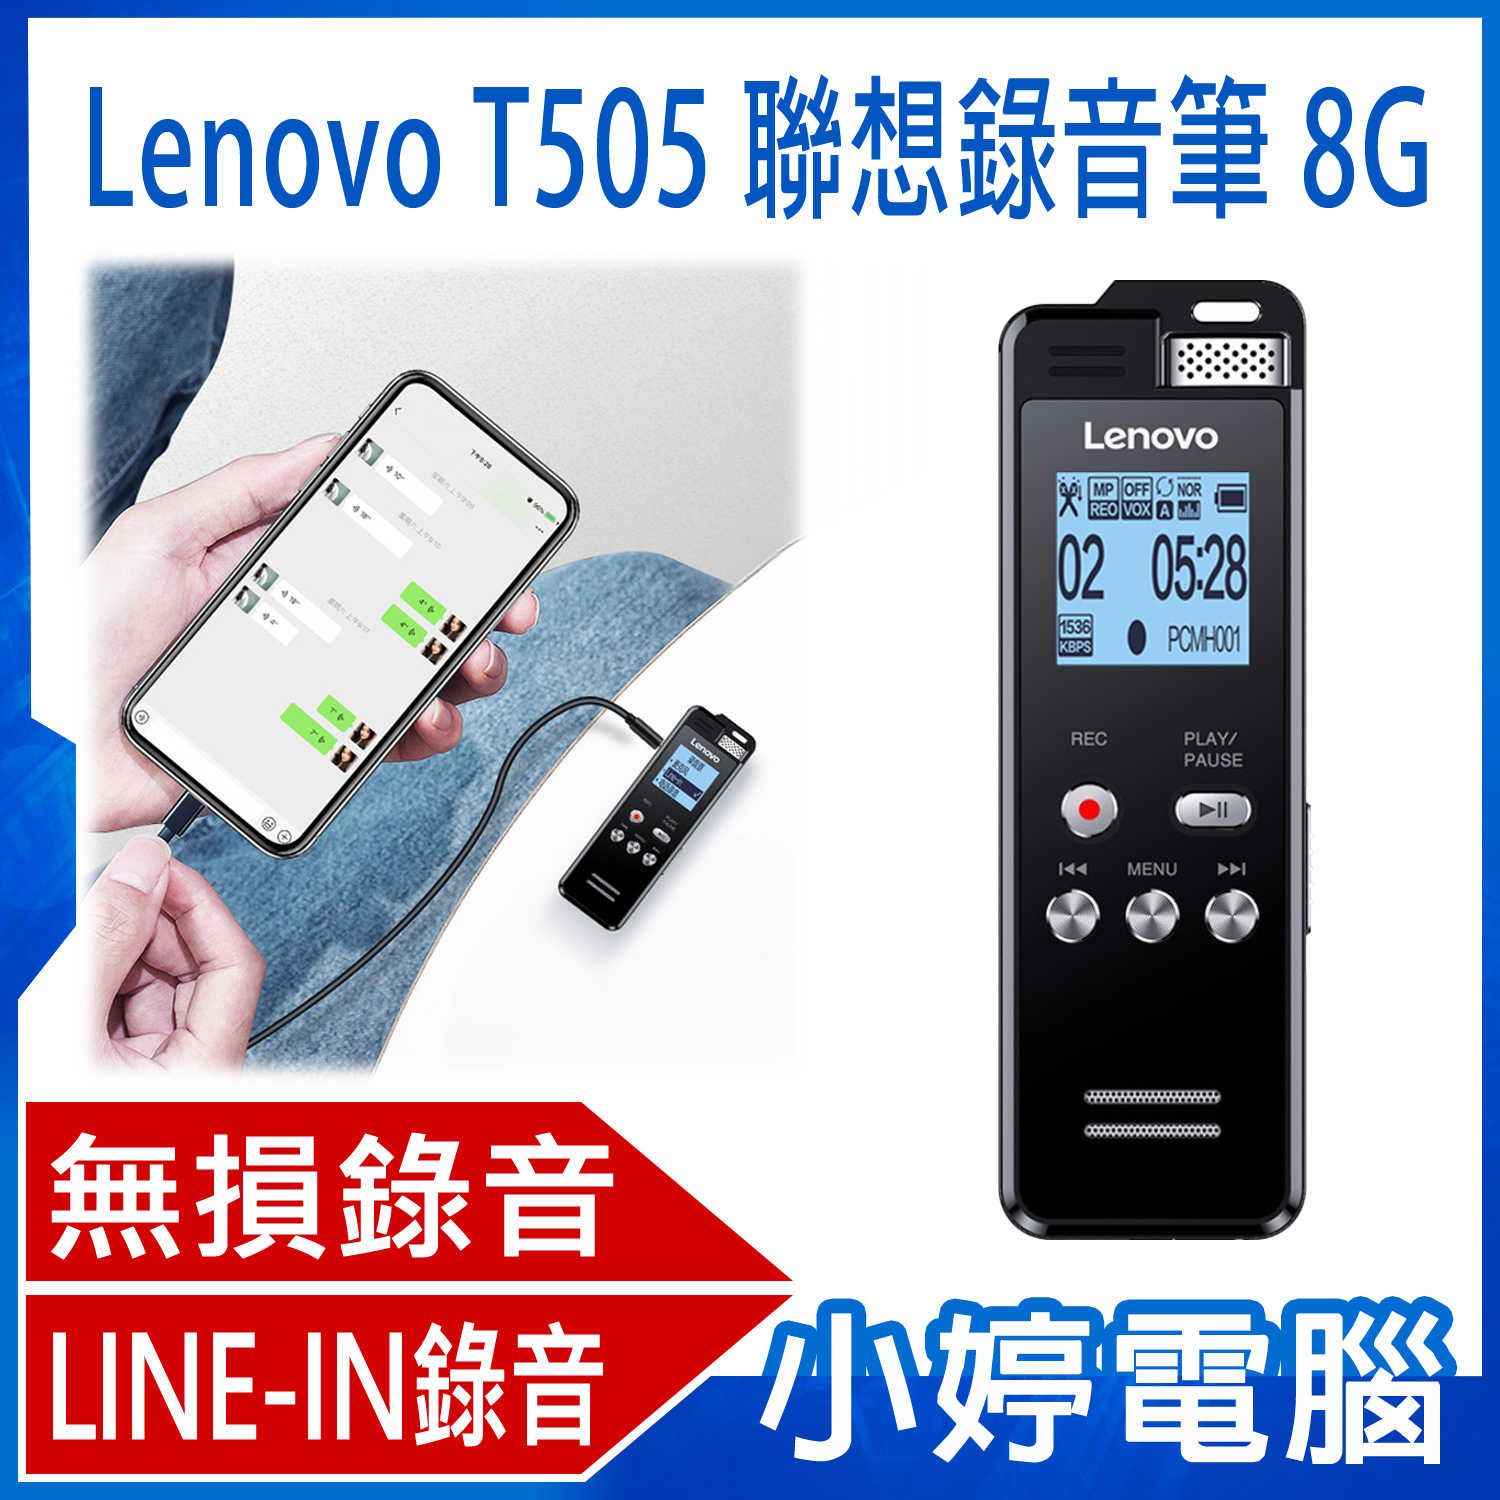 【小婷電腦】全新 Lenovo T505 聯想錄音筆 8G 密碼保護 錄音檔編輯 LINE-IN錄音 支援TF卡